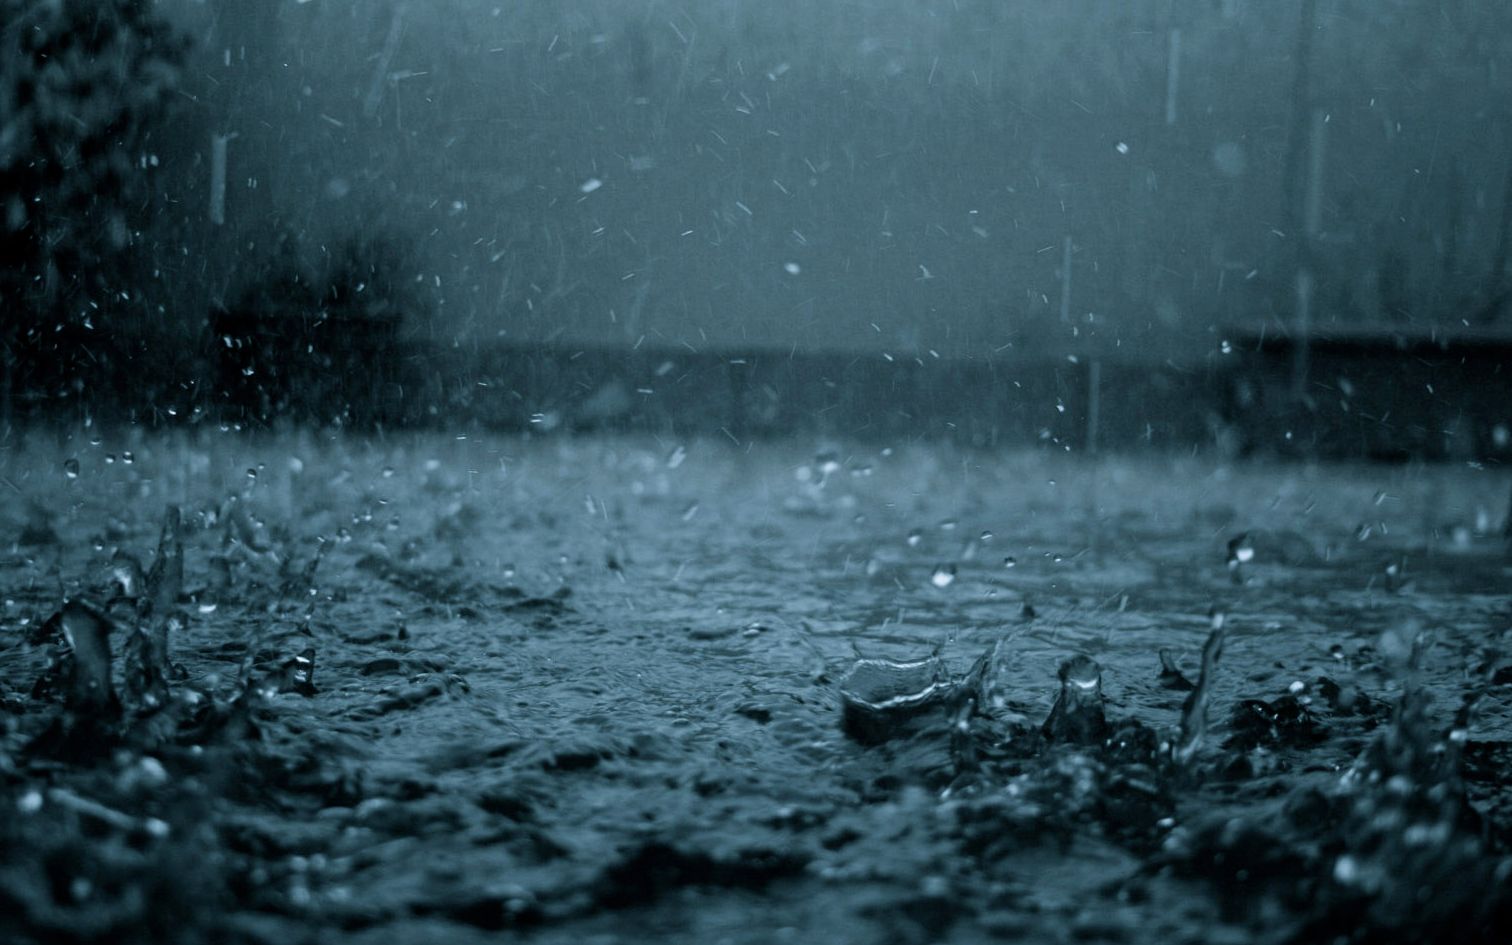 【雨夜】温和舒适的夜晚雨声3小时白噪音